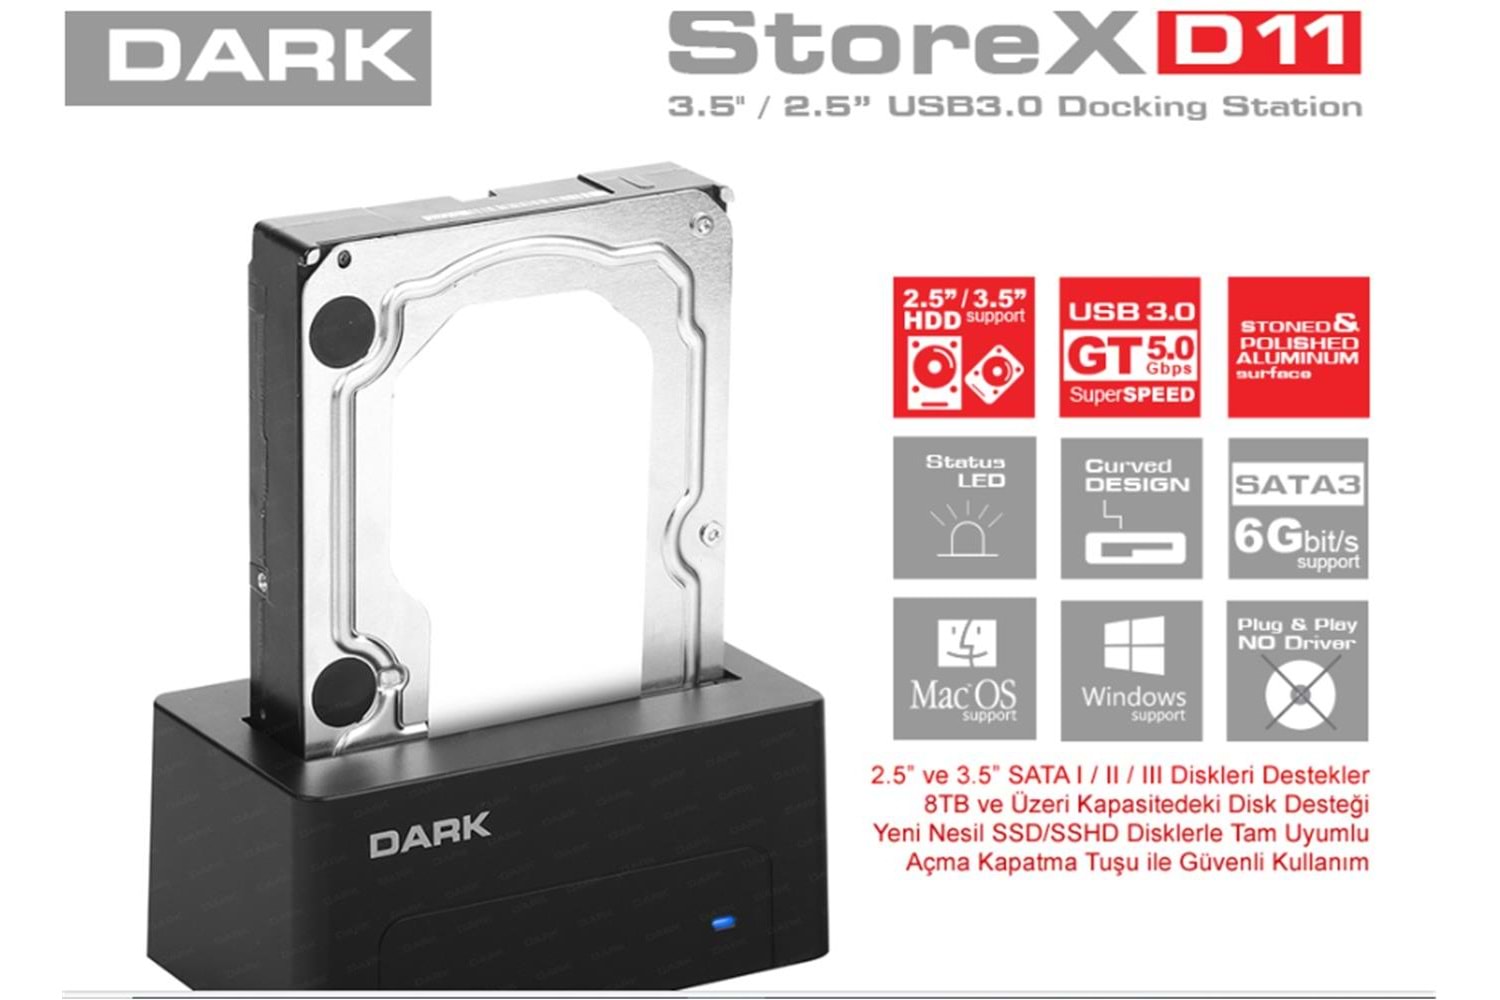 Dark StoreX.D11 3.5